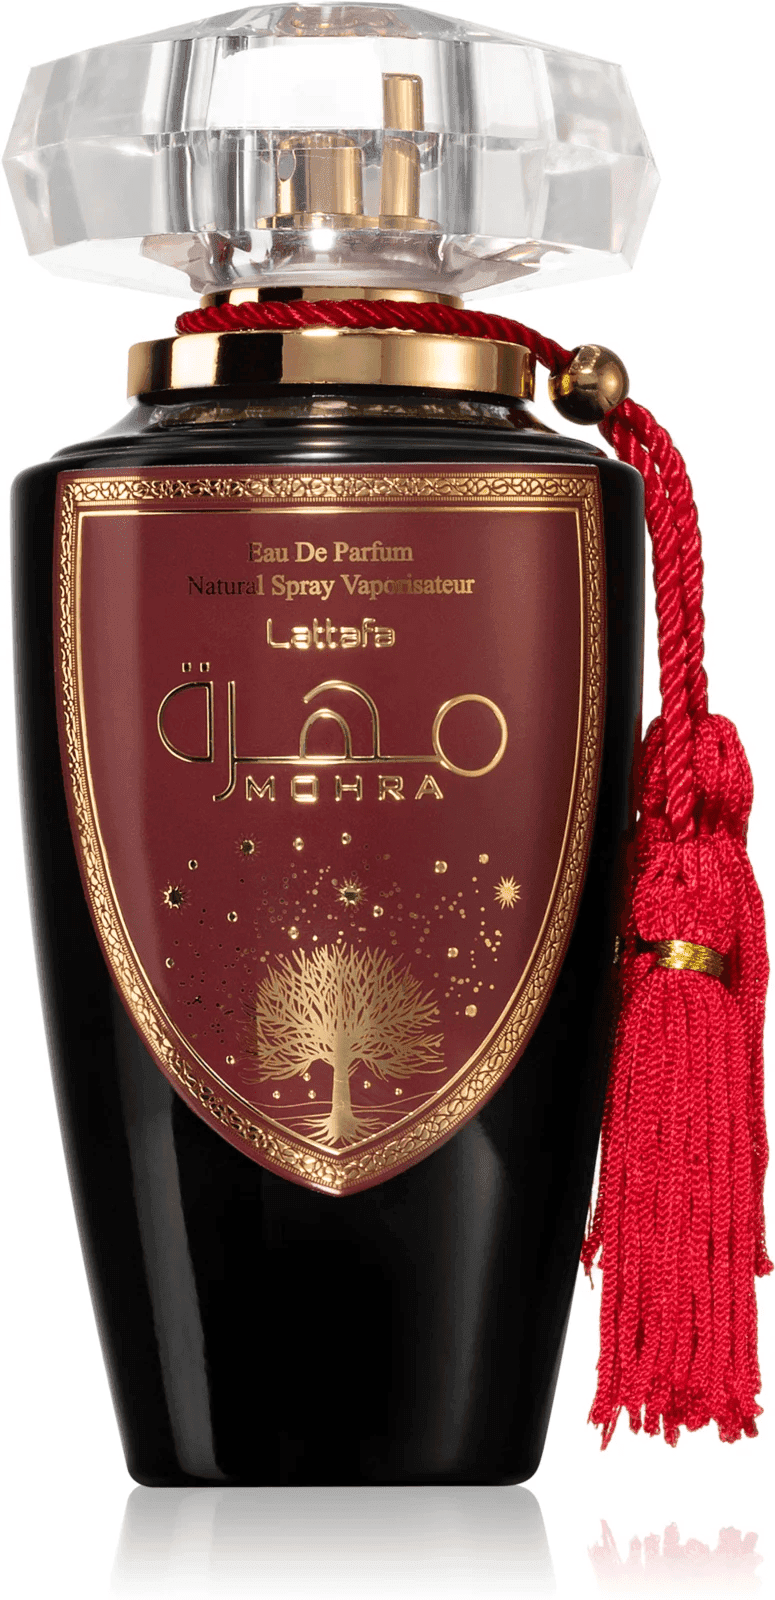 Elegant bottle of Lattafa Mohra eau de parfum, a unisex fragrance for unique sensory experiences.